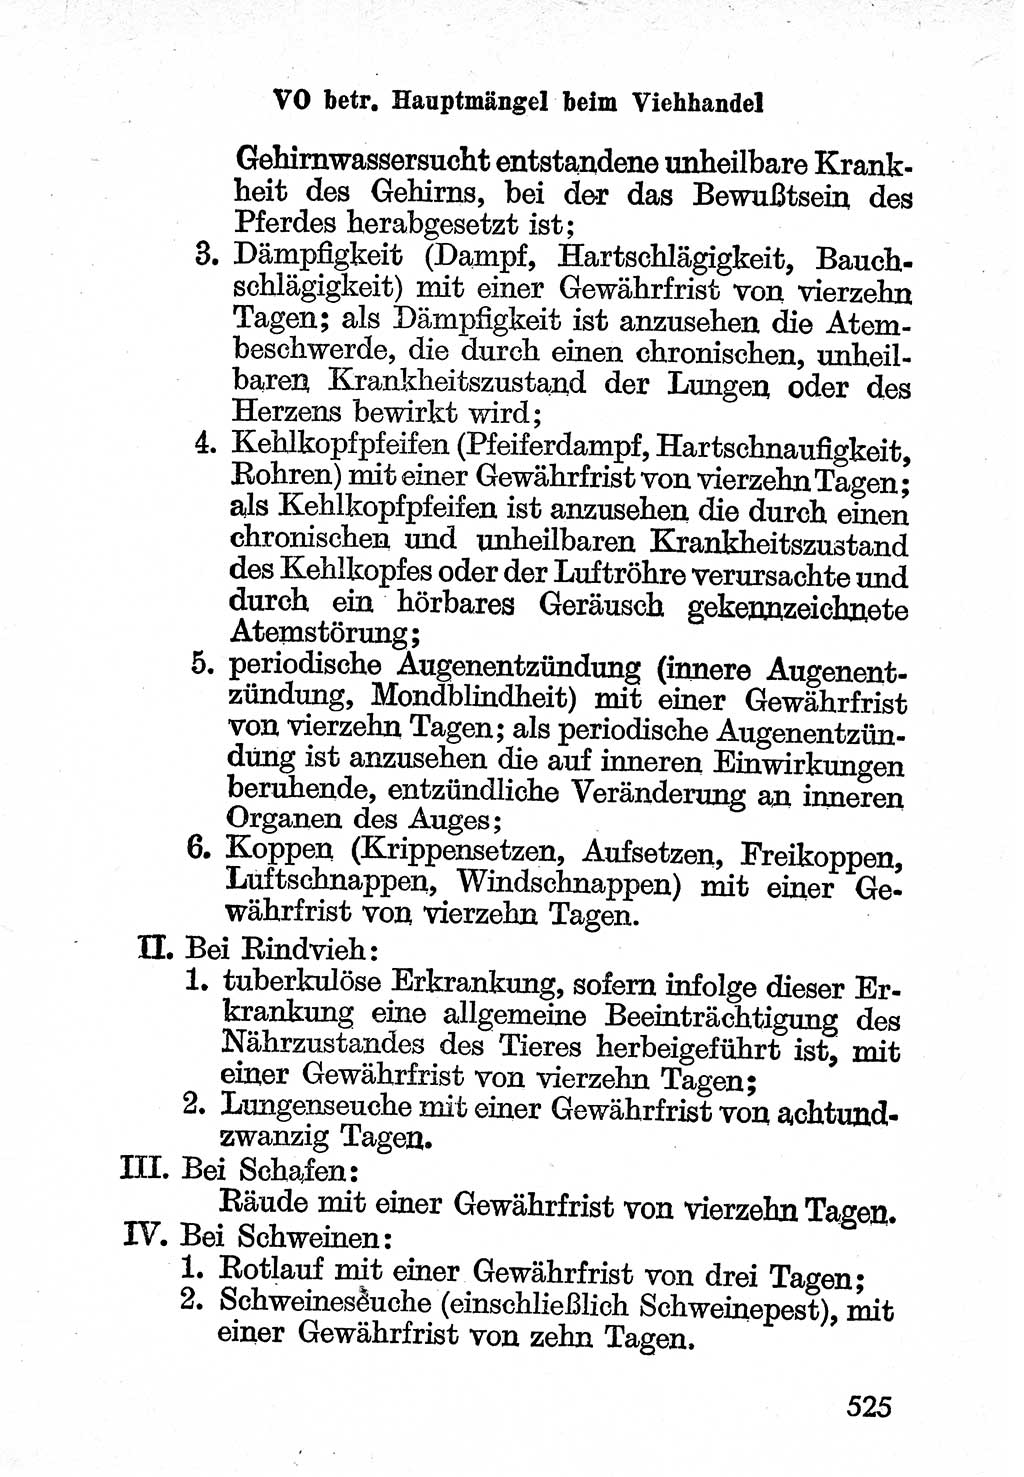 Bürgerliches Gesetzbuch (BGB) nebst wichtigen Nebengesetzen [Deutsche Demokratische Republik (DDR)] 1956, Seite 525 (BGB Nebenges. DDR 1956, S. 525)